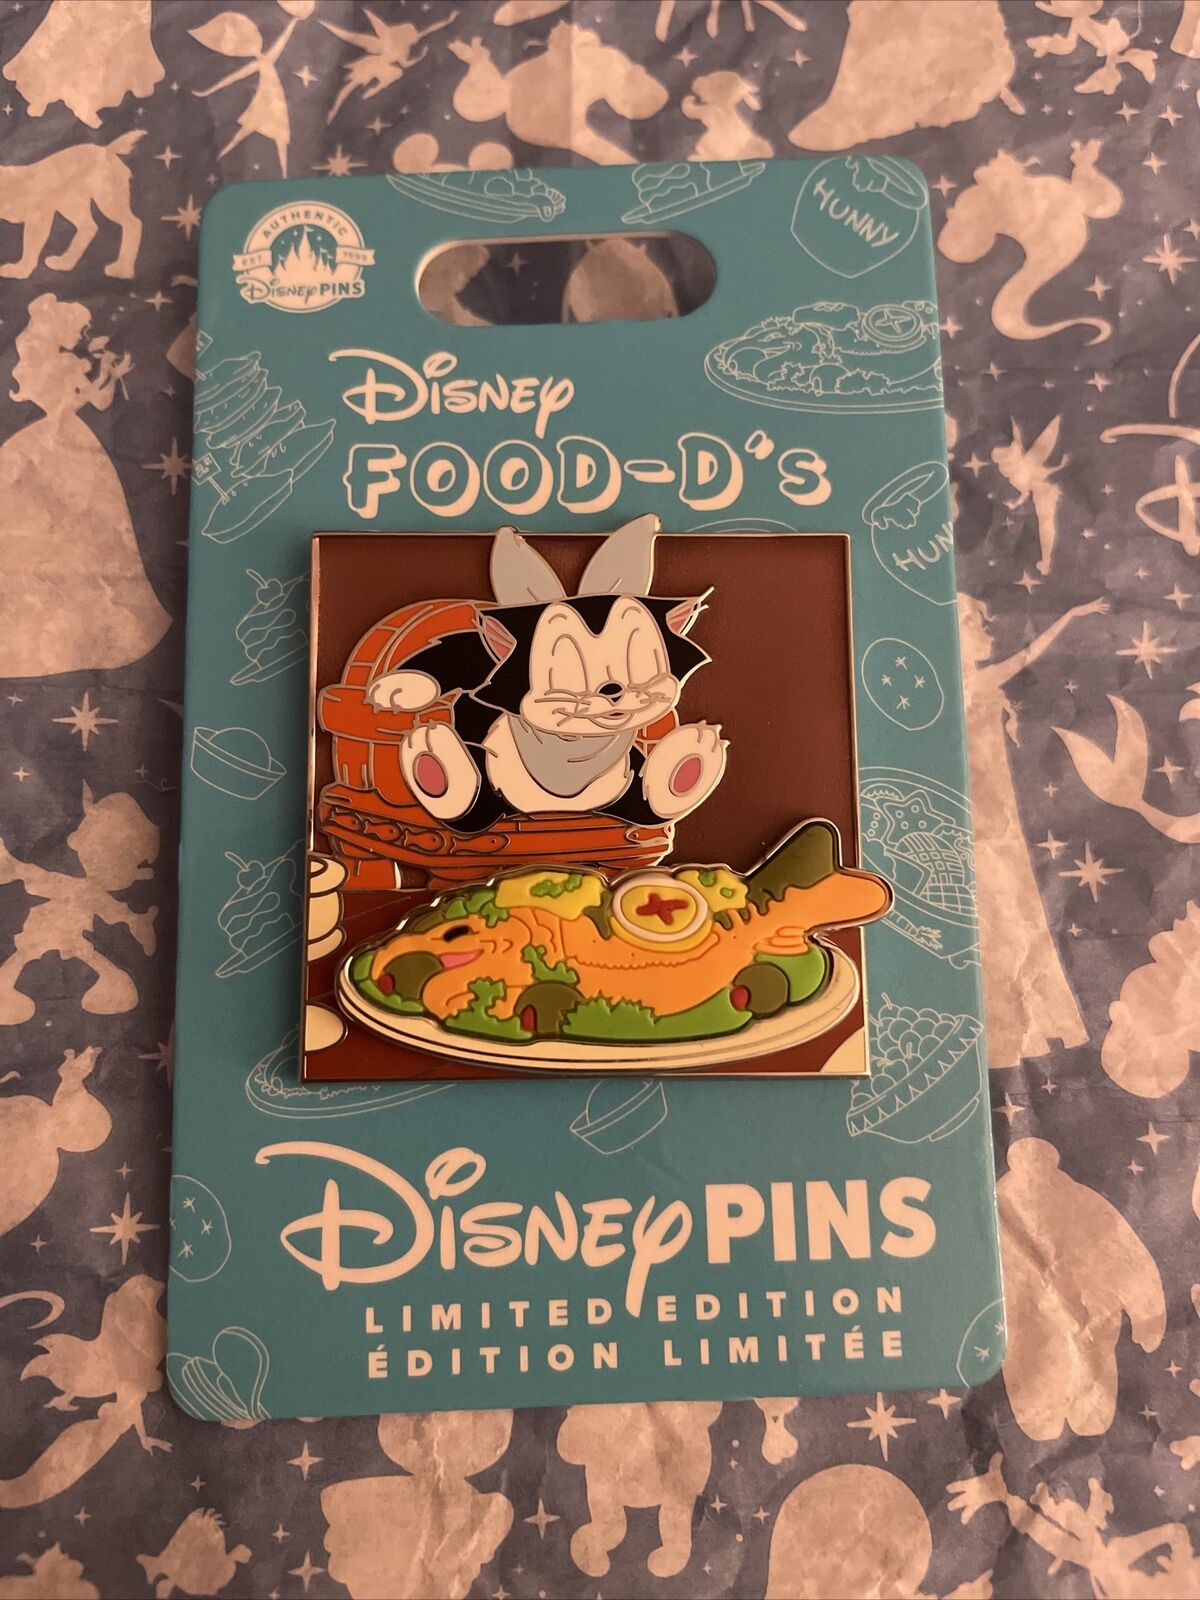 PREORDER Disney Pins HKDL Hong Kong Pin Food-D’s Food D LE 5000 Pin Figaro Cat